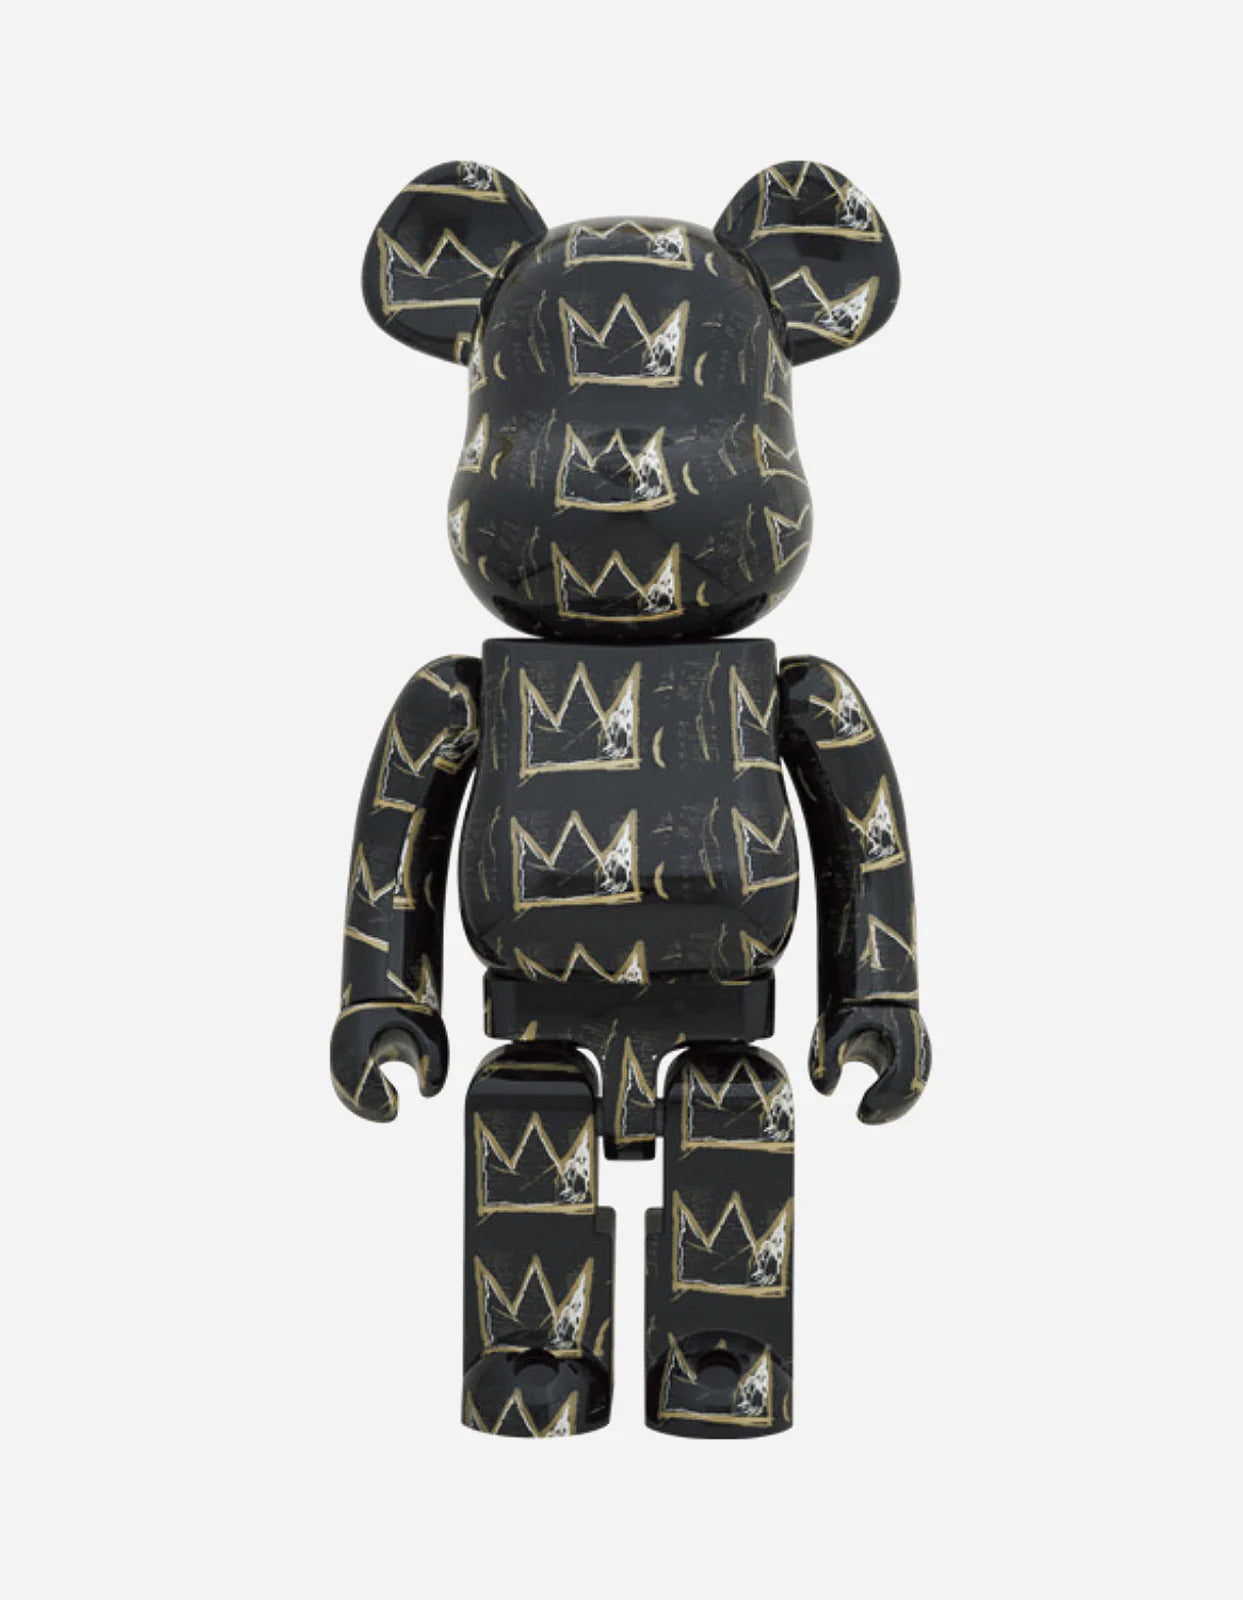 Jean-Michel Basquiat #8 1000% Bearbrick by Medicom Toy